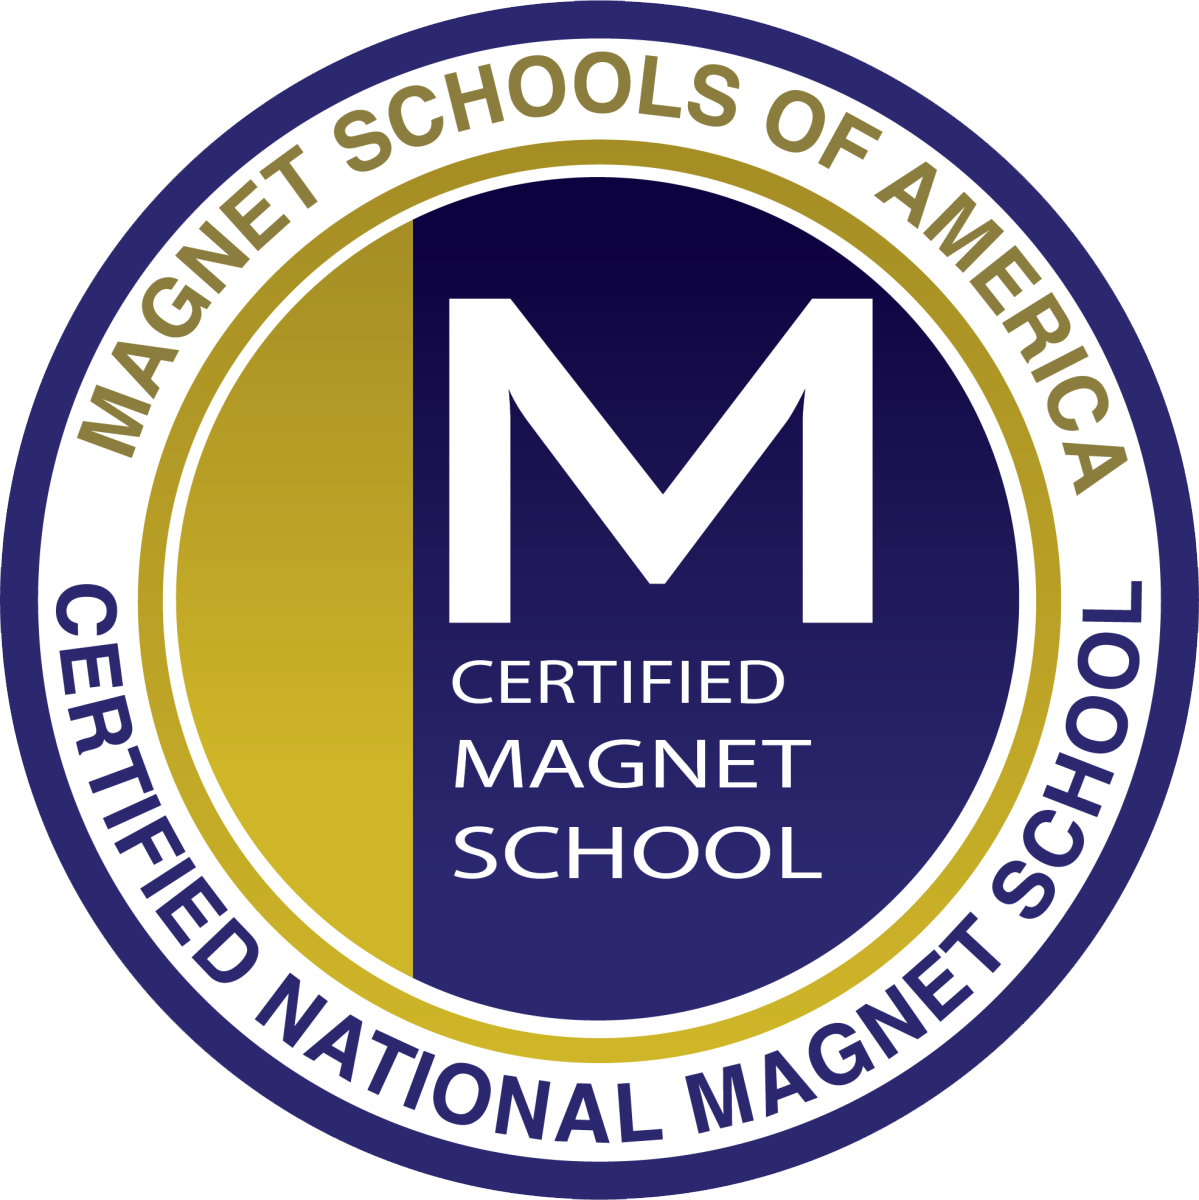 Magnet Schools of America Certified Magnet School